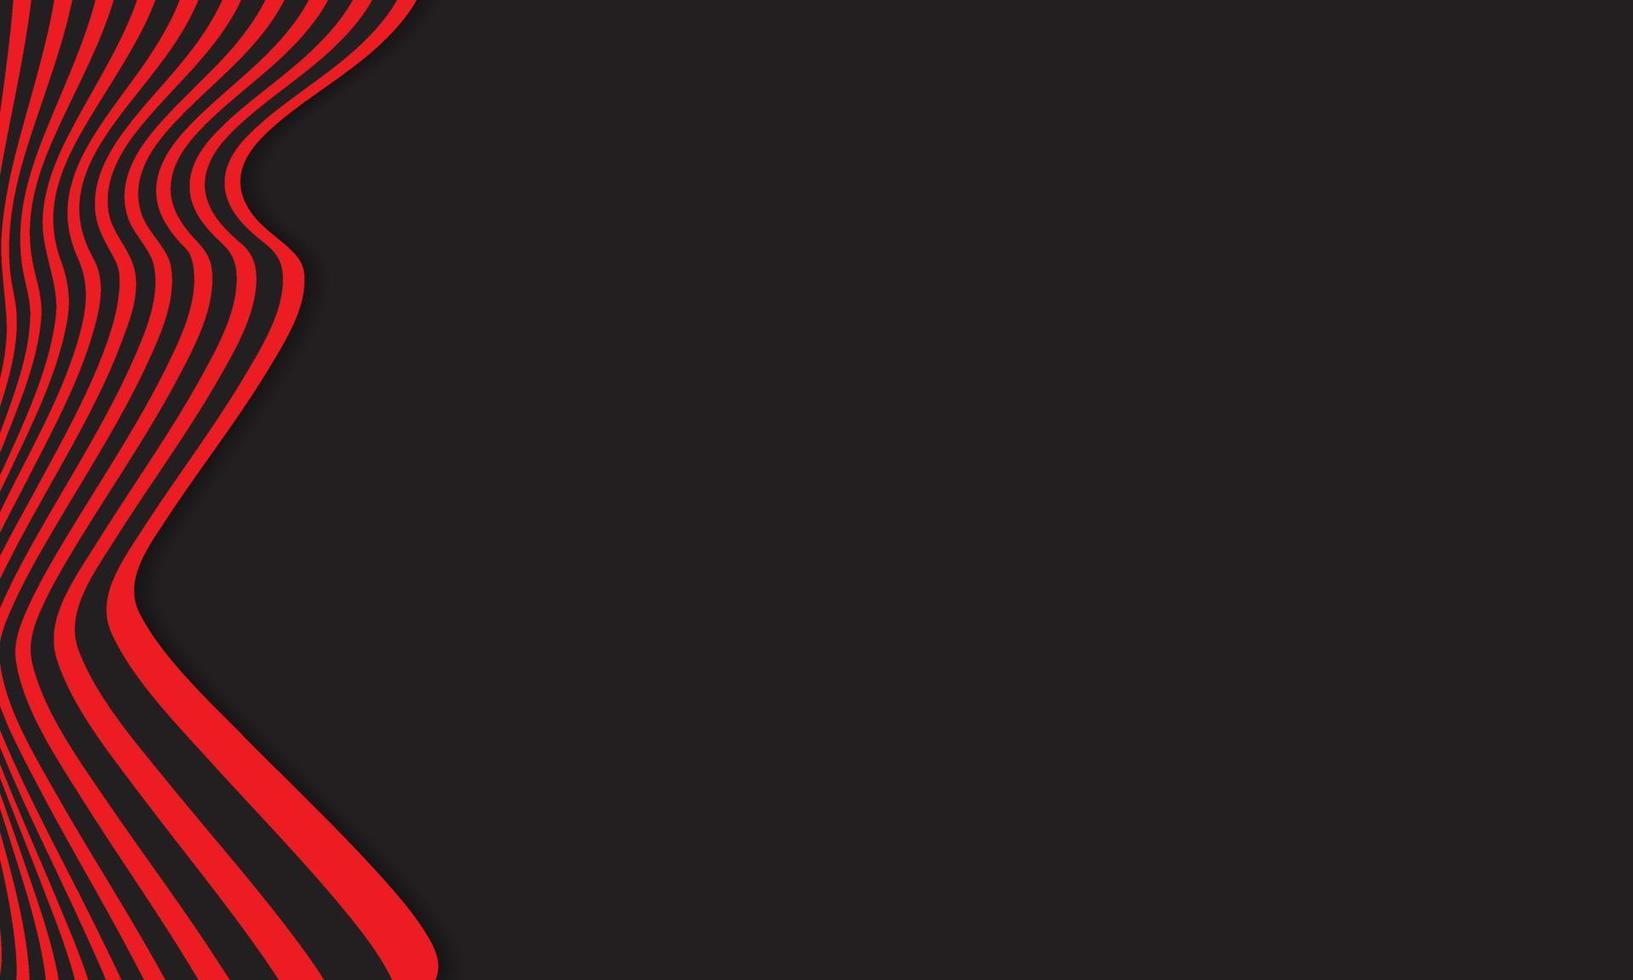 sfondo astratto a righe in nero e rosso con motivo a linee ondulate. vettore